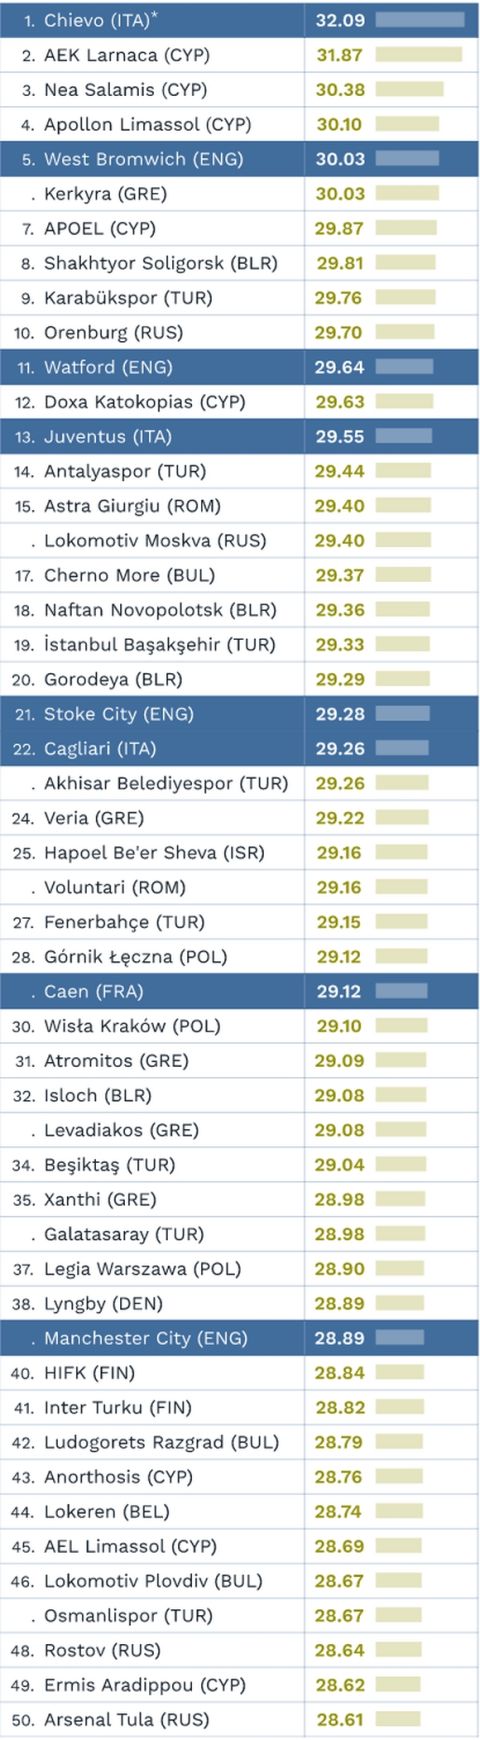 Οι ομάδες με τους πιο μικρούς και πιο μεγάλους παίκτες σε Ελλάδα και εξωτερικό